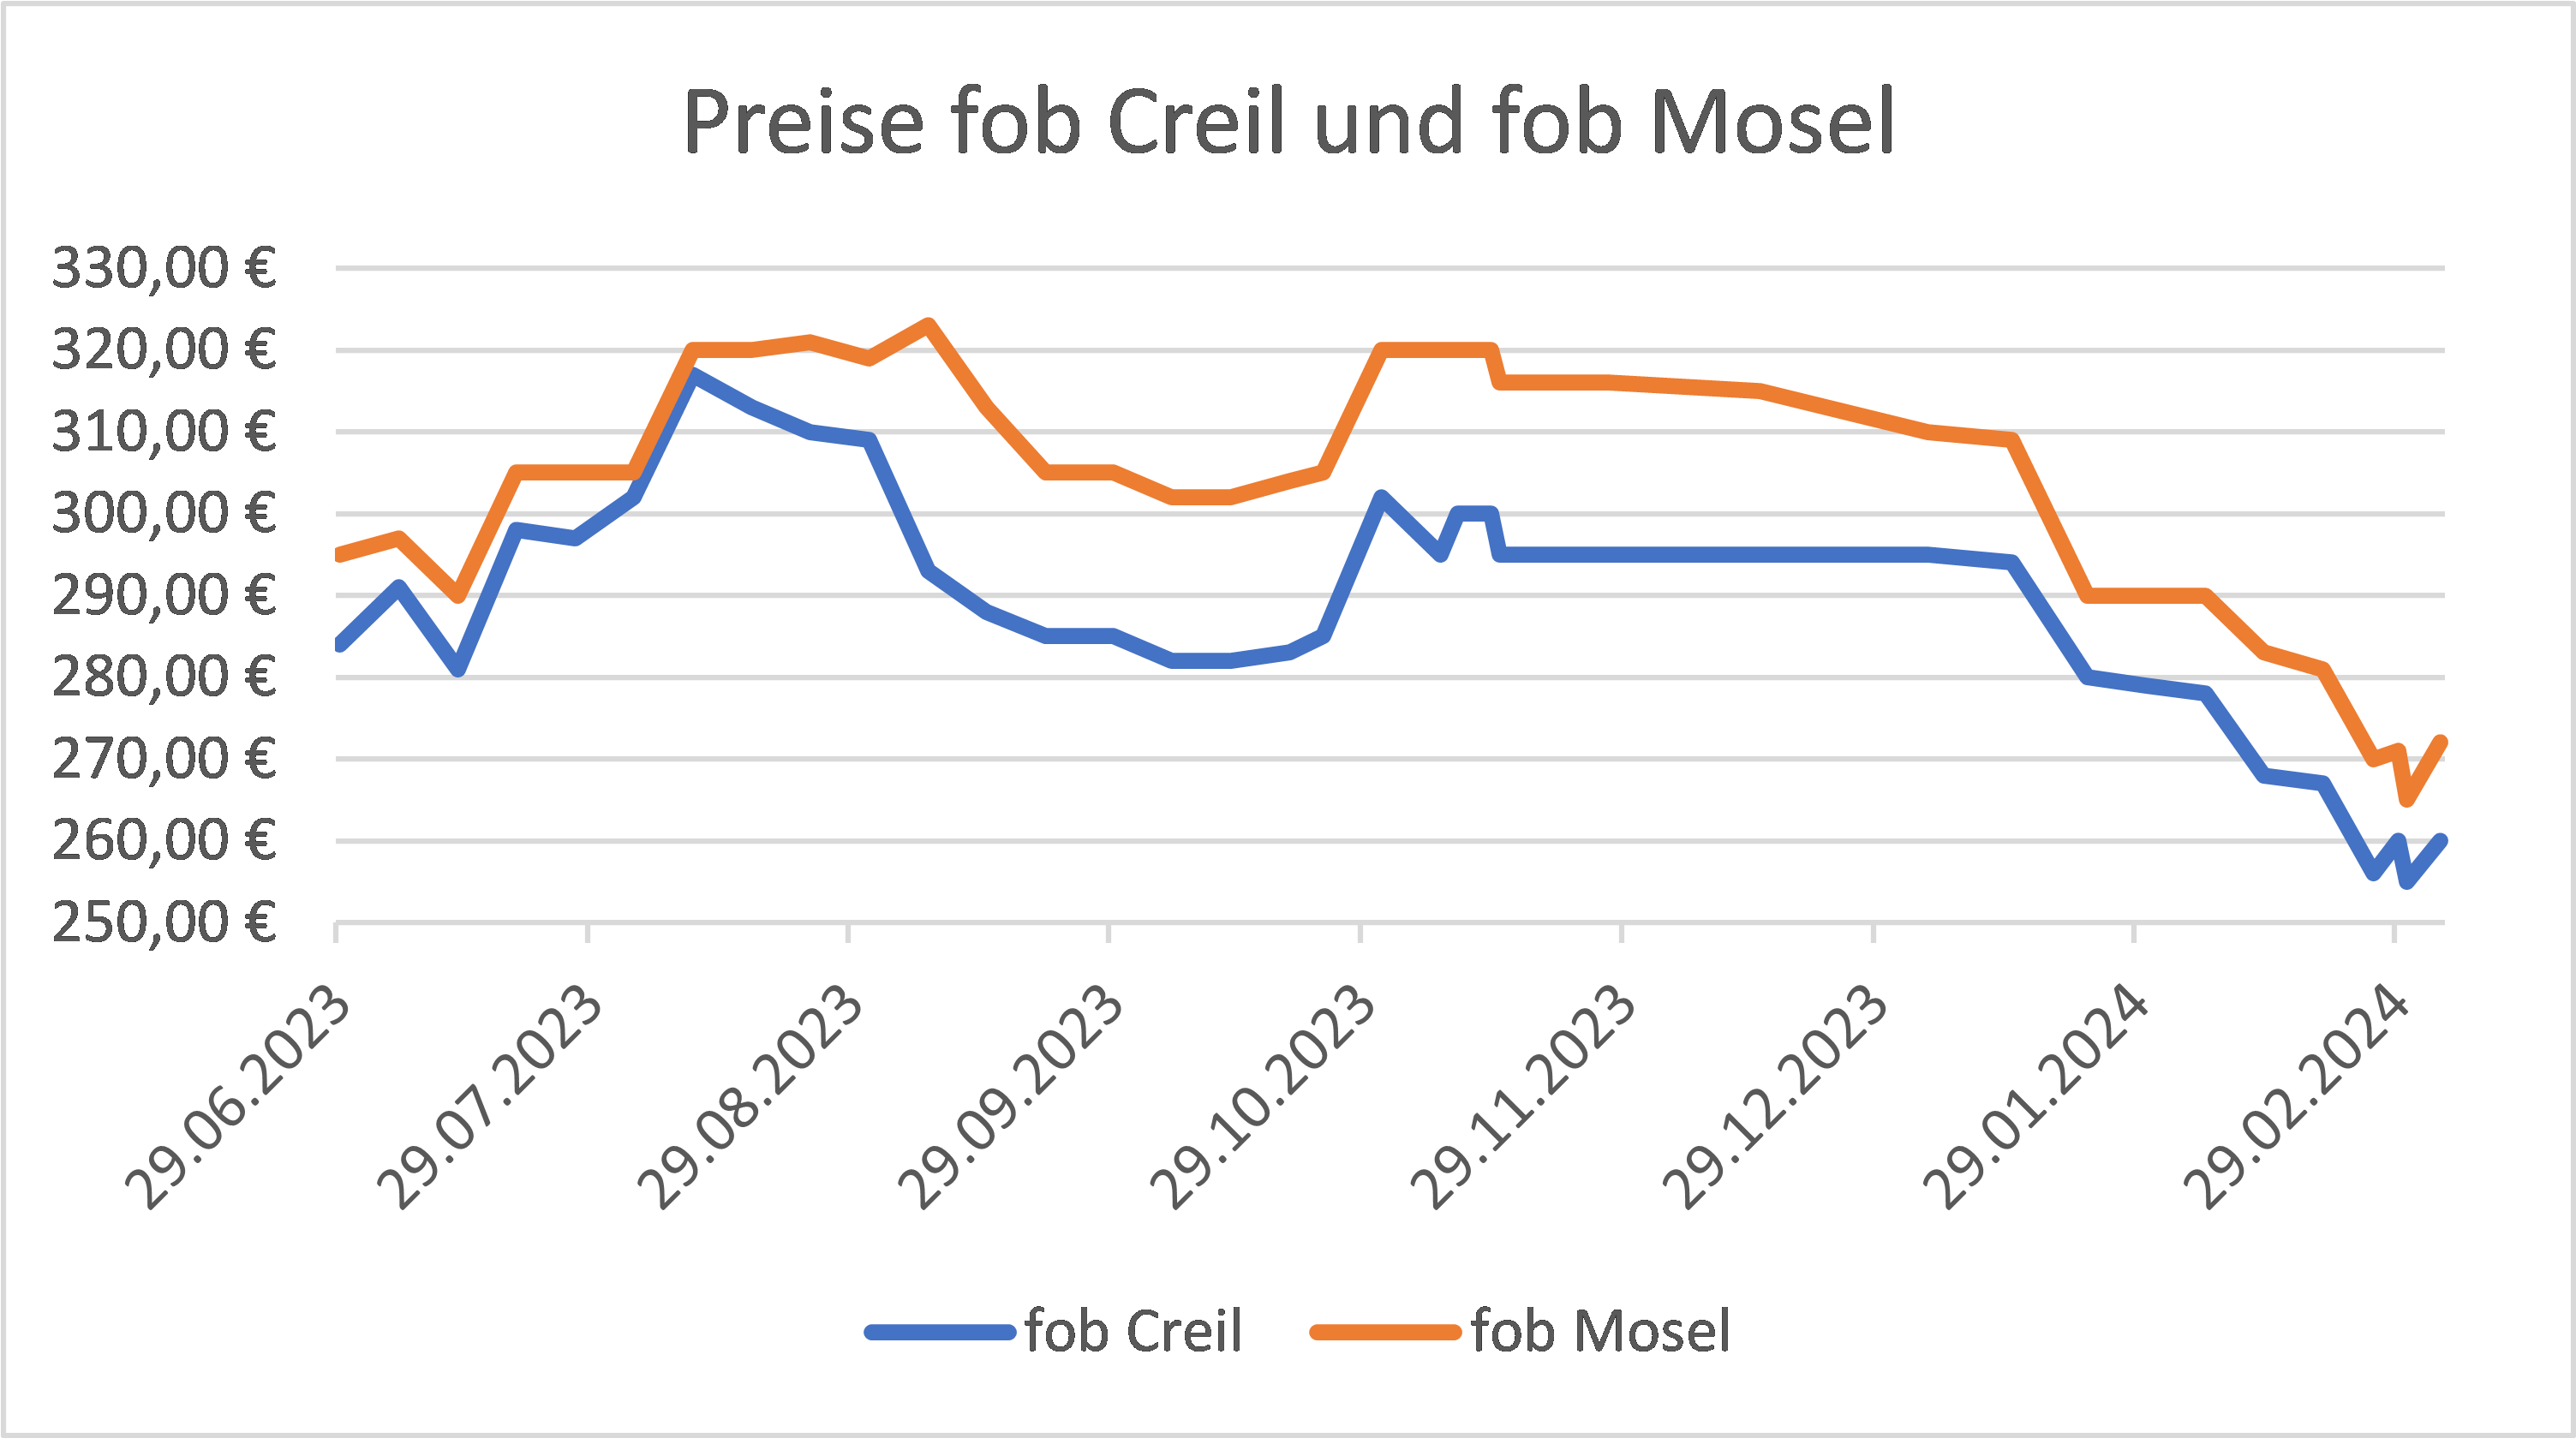 Preisdiagramm für Braugerste fob Creil und fob Mosel, aufgezeichnet bis Februar 2024.